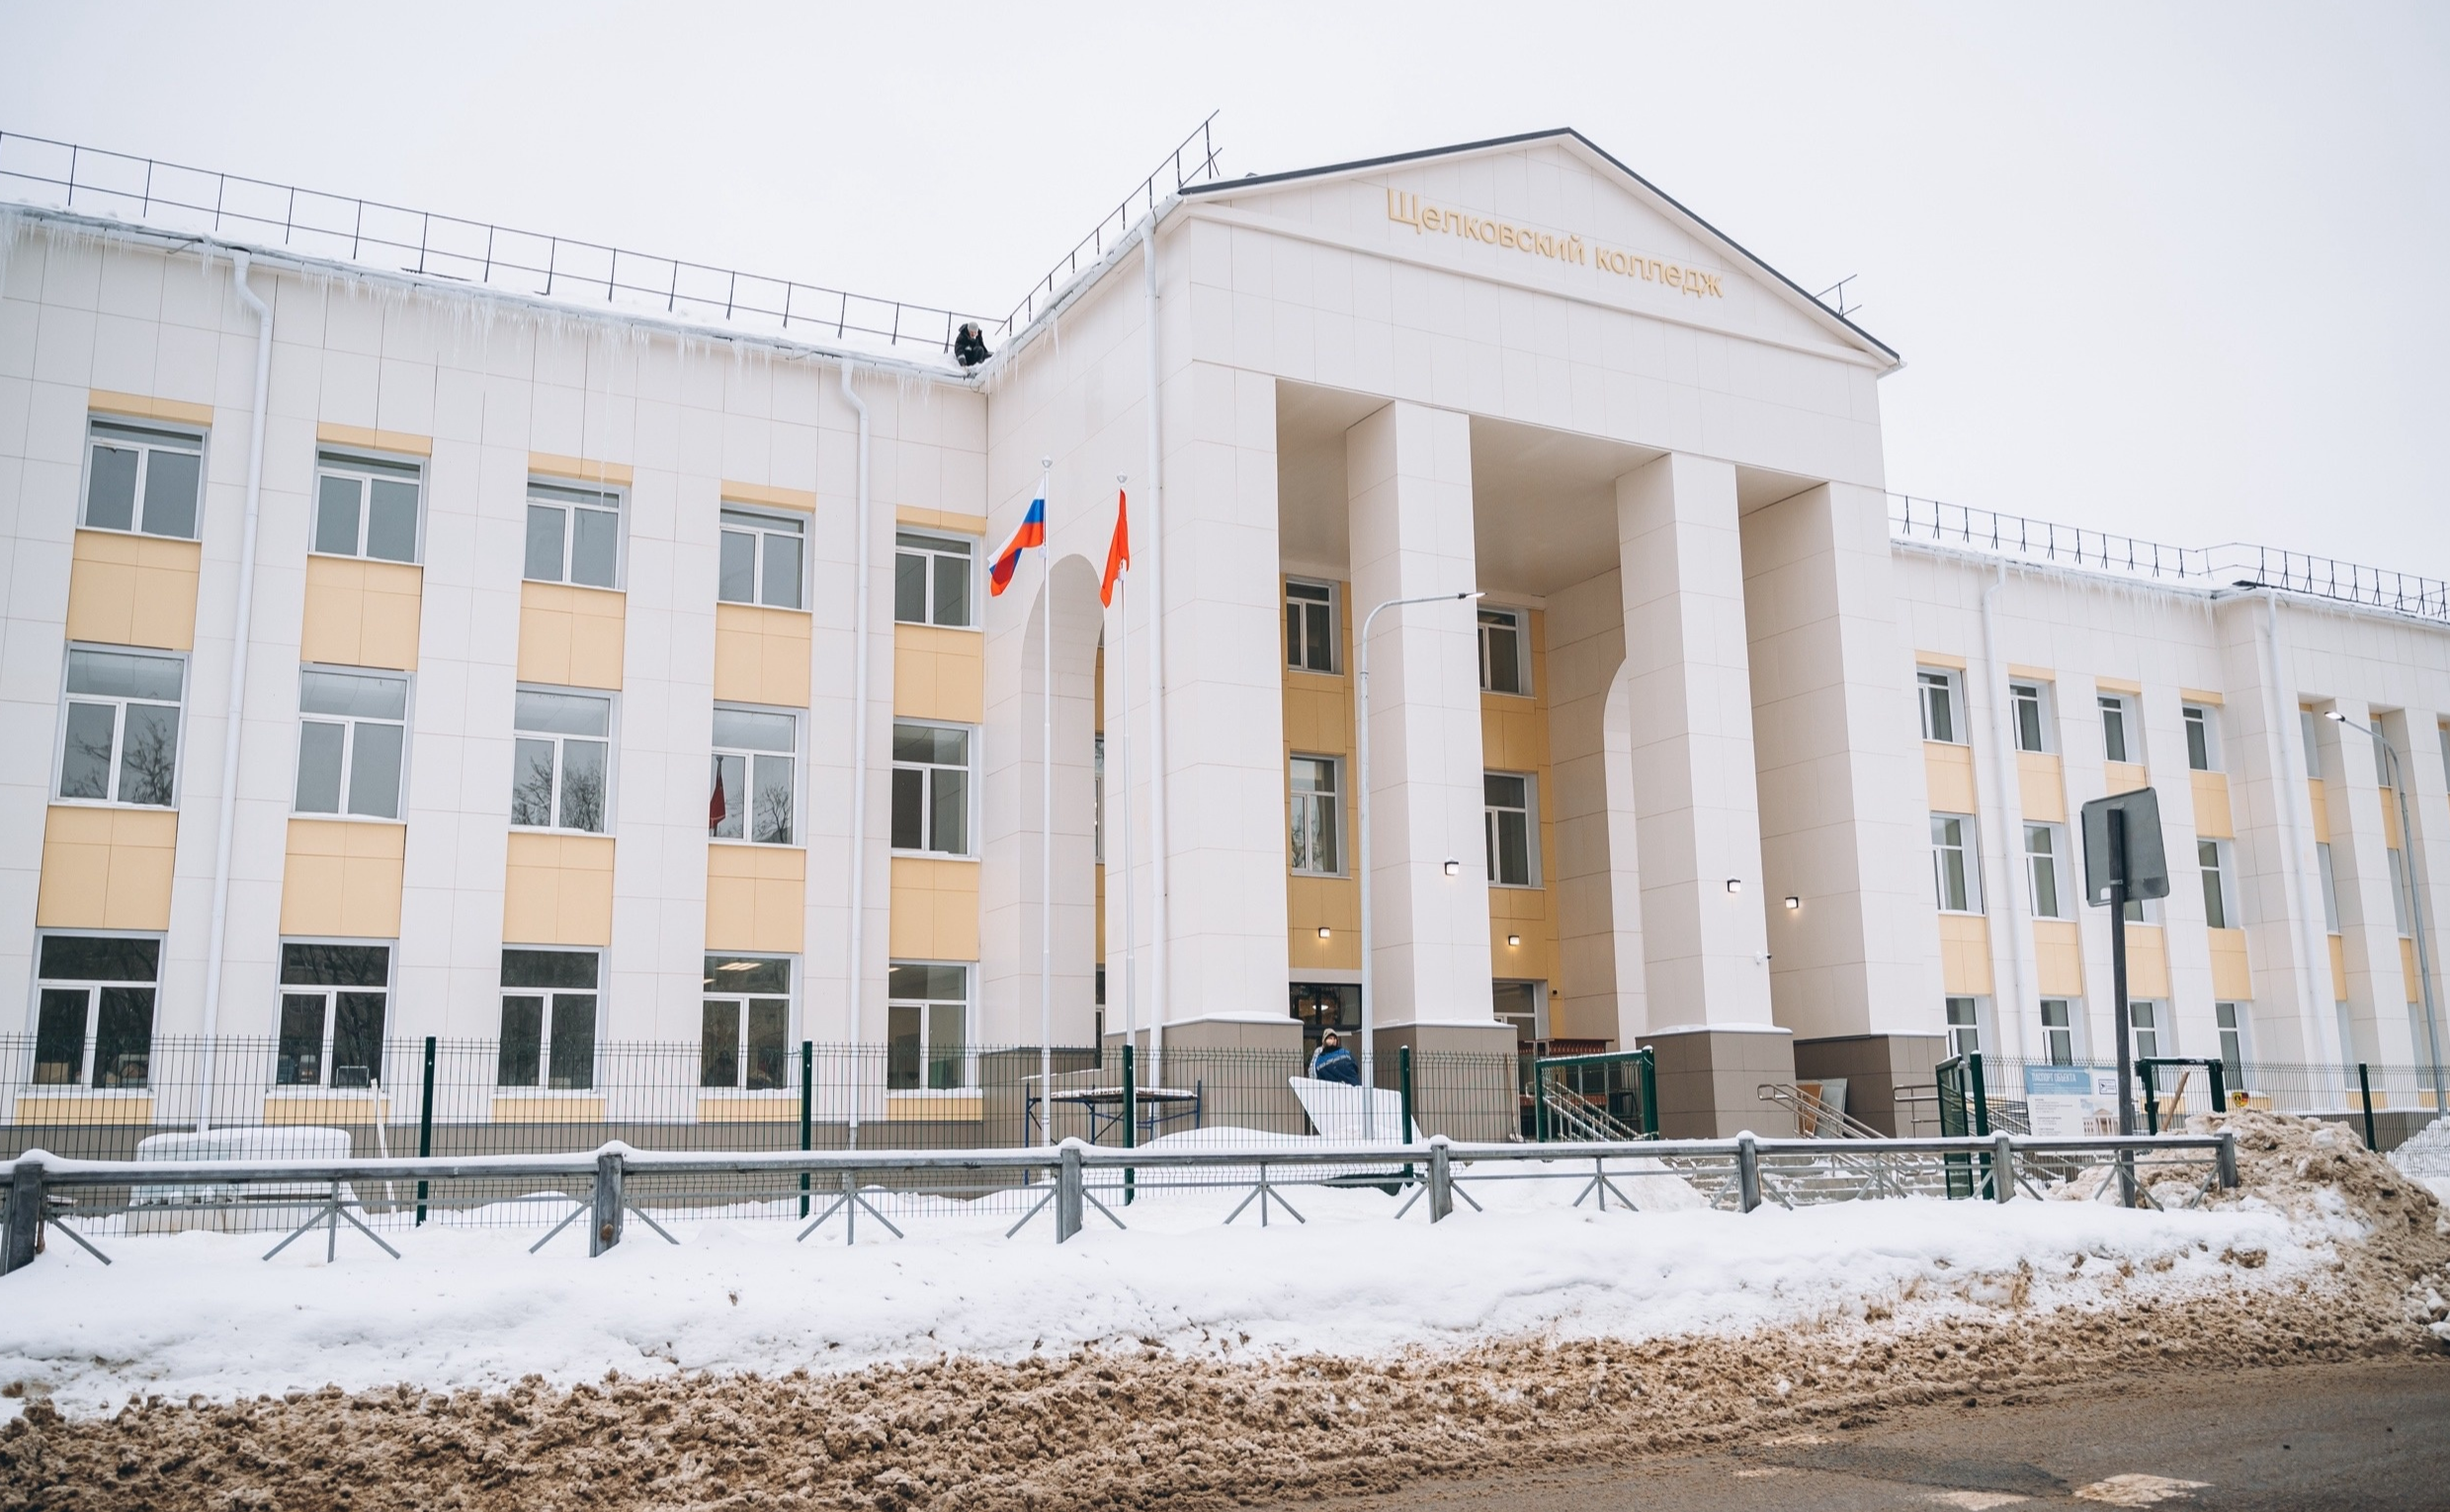 Порядка 500 студентов будут обучаться в обновленном корпусе Щелковского колледжа